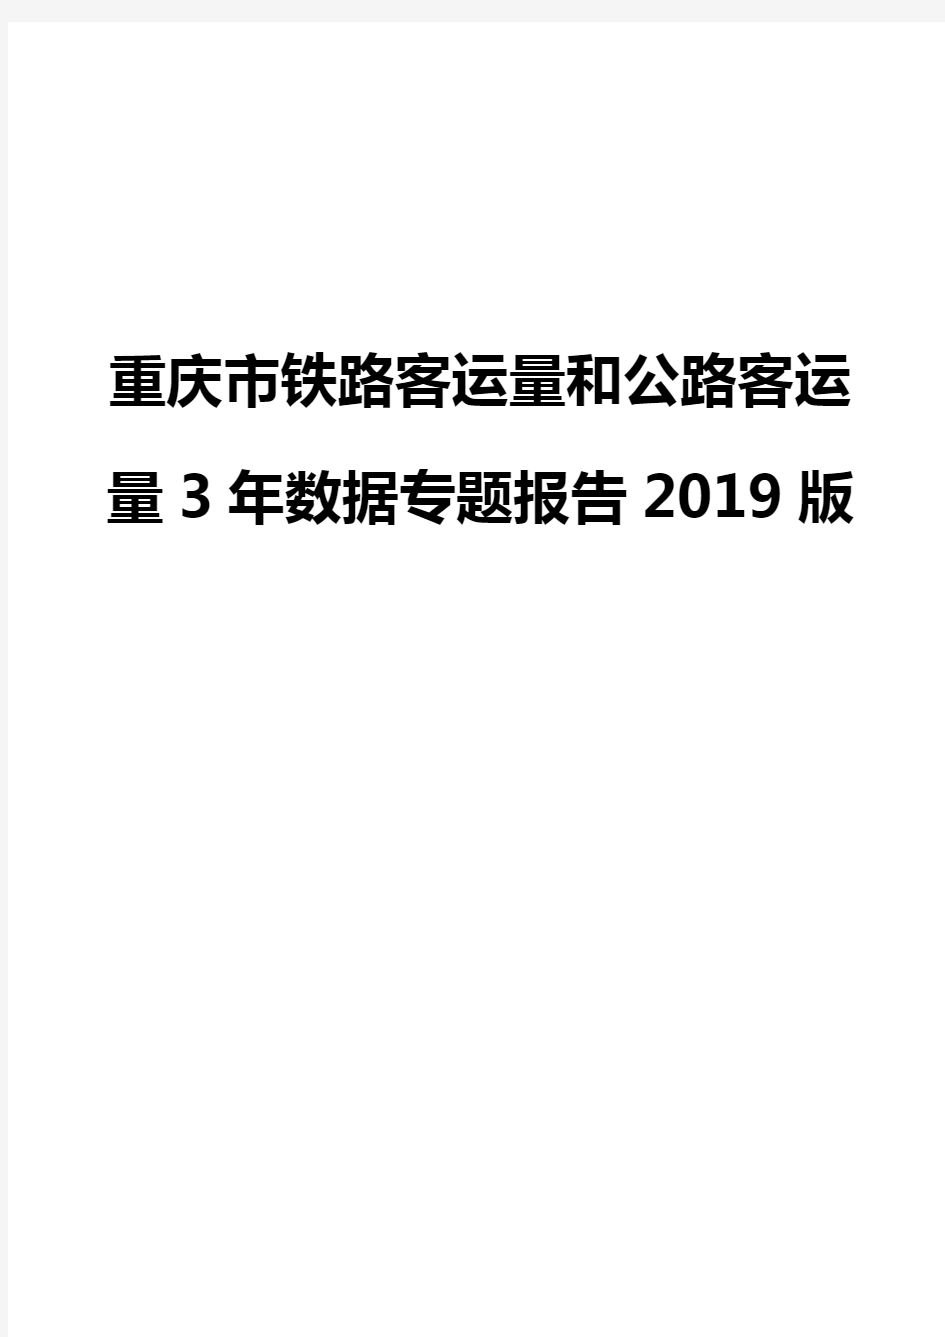 重庆市铁路客运量和公路客运量3年数据专题报告2019版